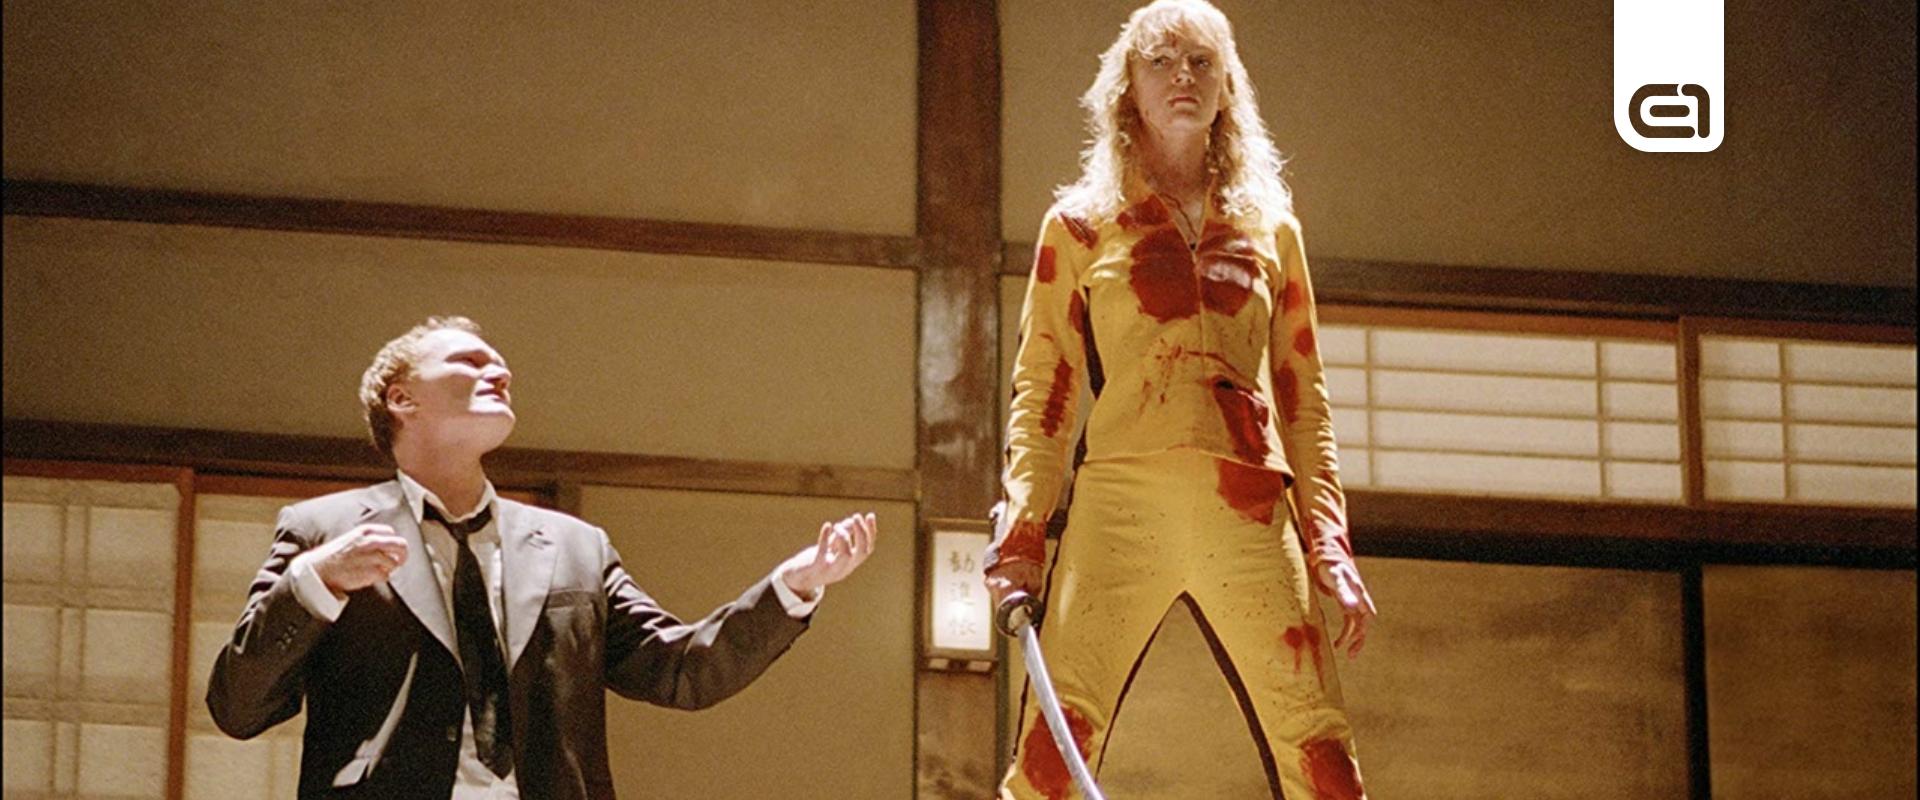 Felújított kiadást kap Tarantino legbrutálisabb filmje, a Kill Bill